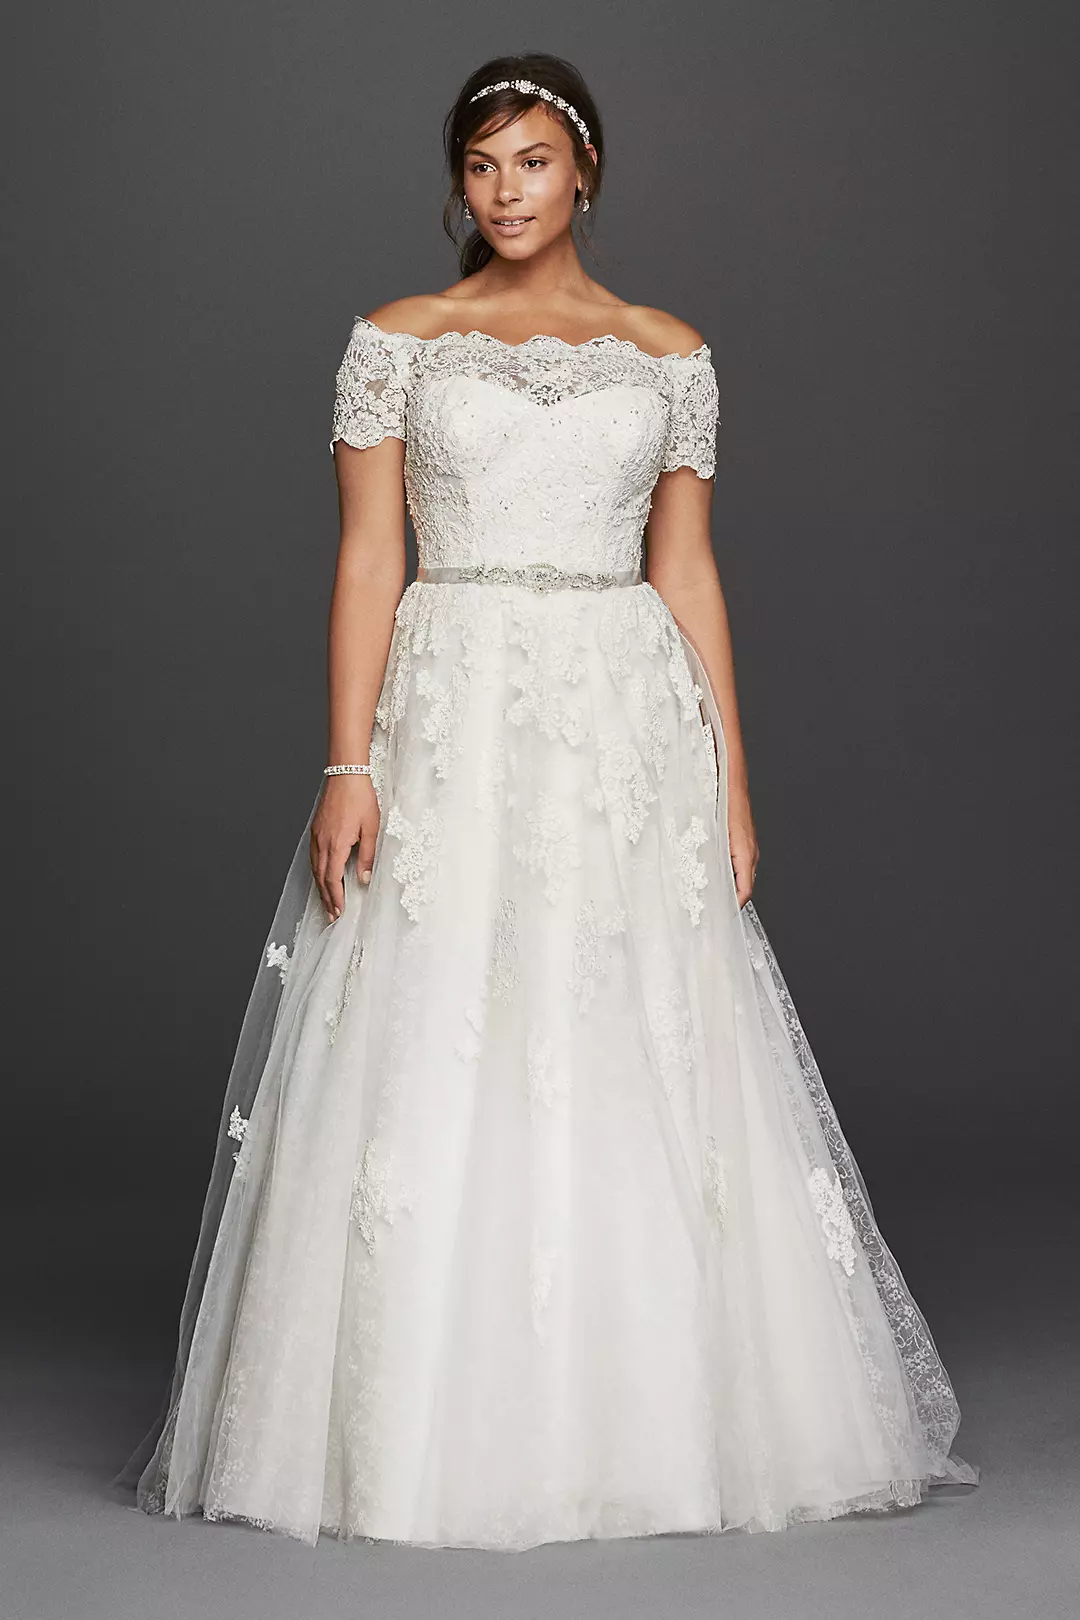 Jewel Short Sleeve Off The Shoulder Wedding Dress Image